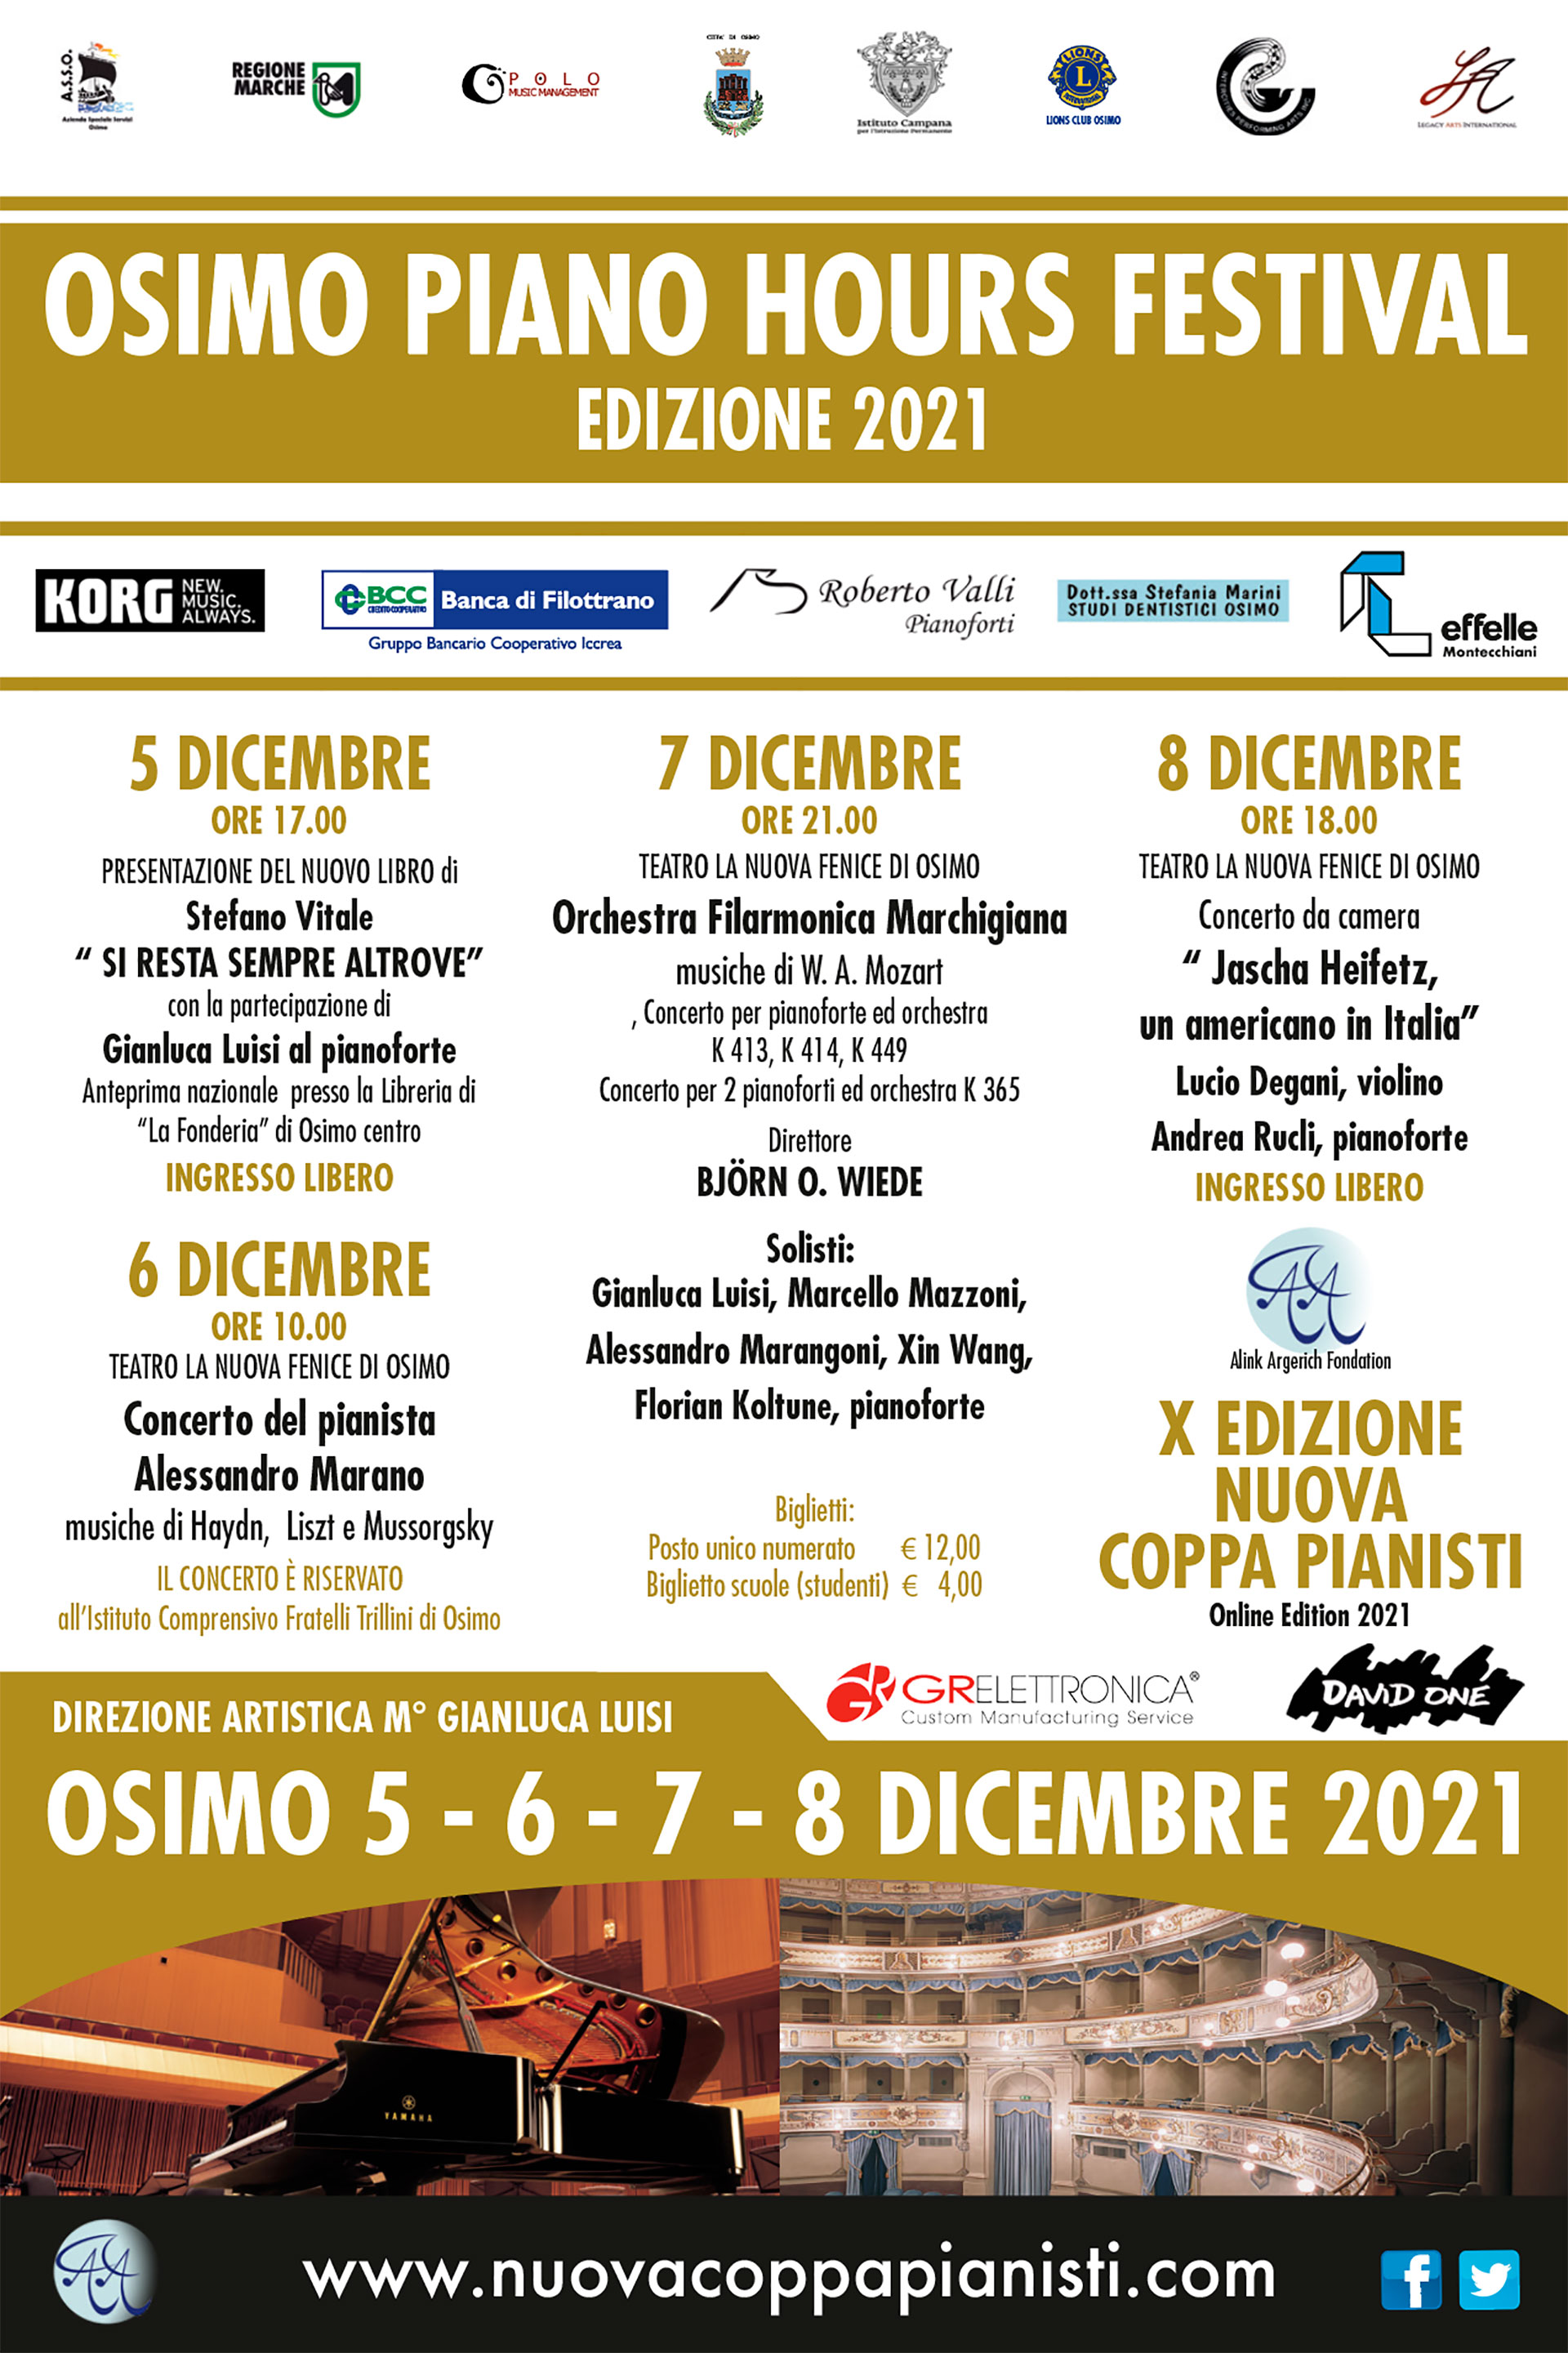 Osimo Piano Hours Festival, 2021